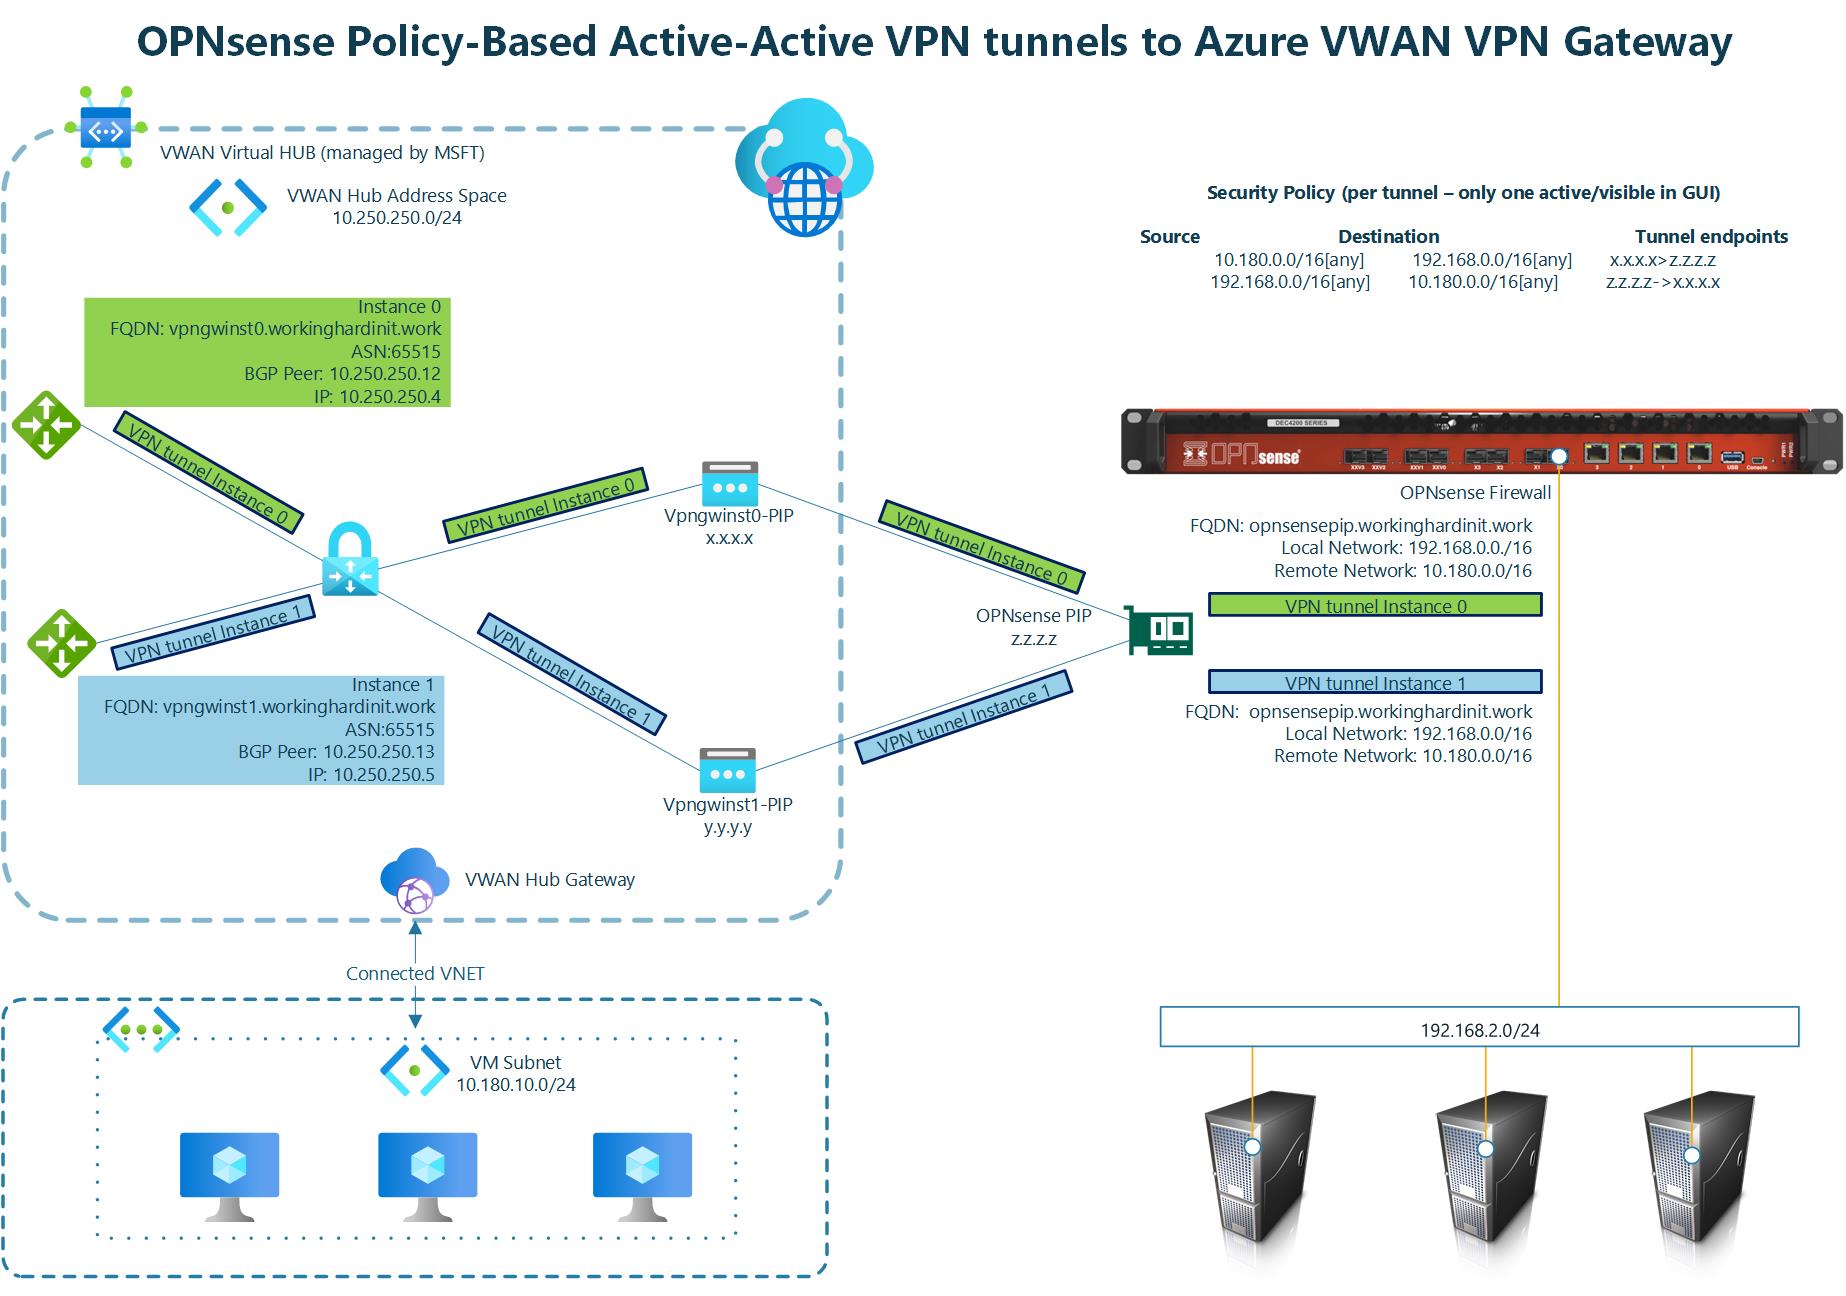 Azure Virtual WAN VPN Gateway